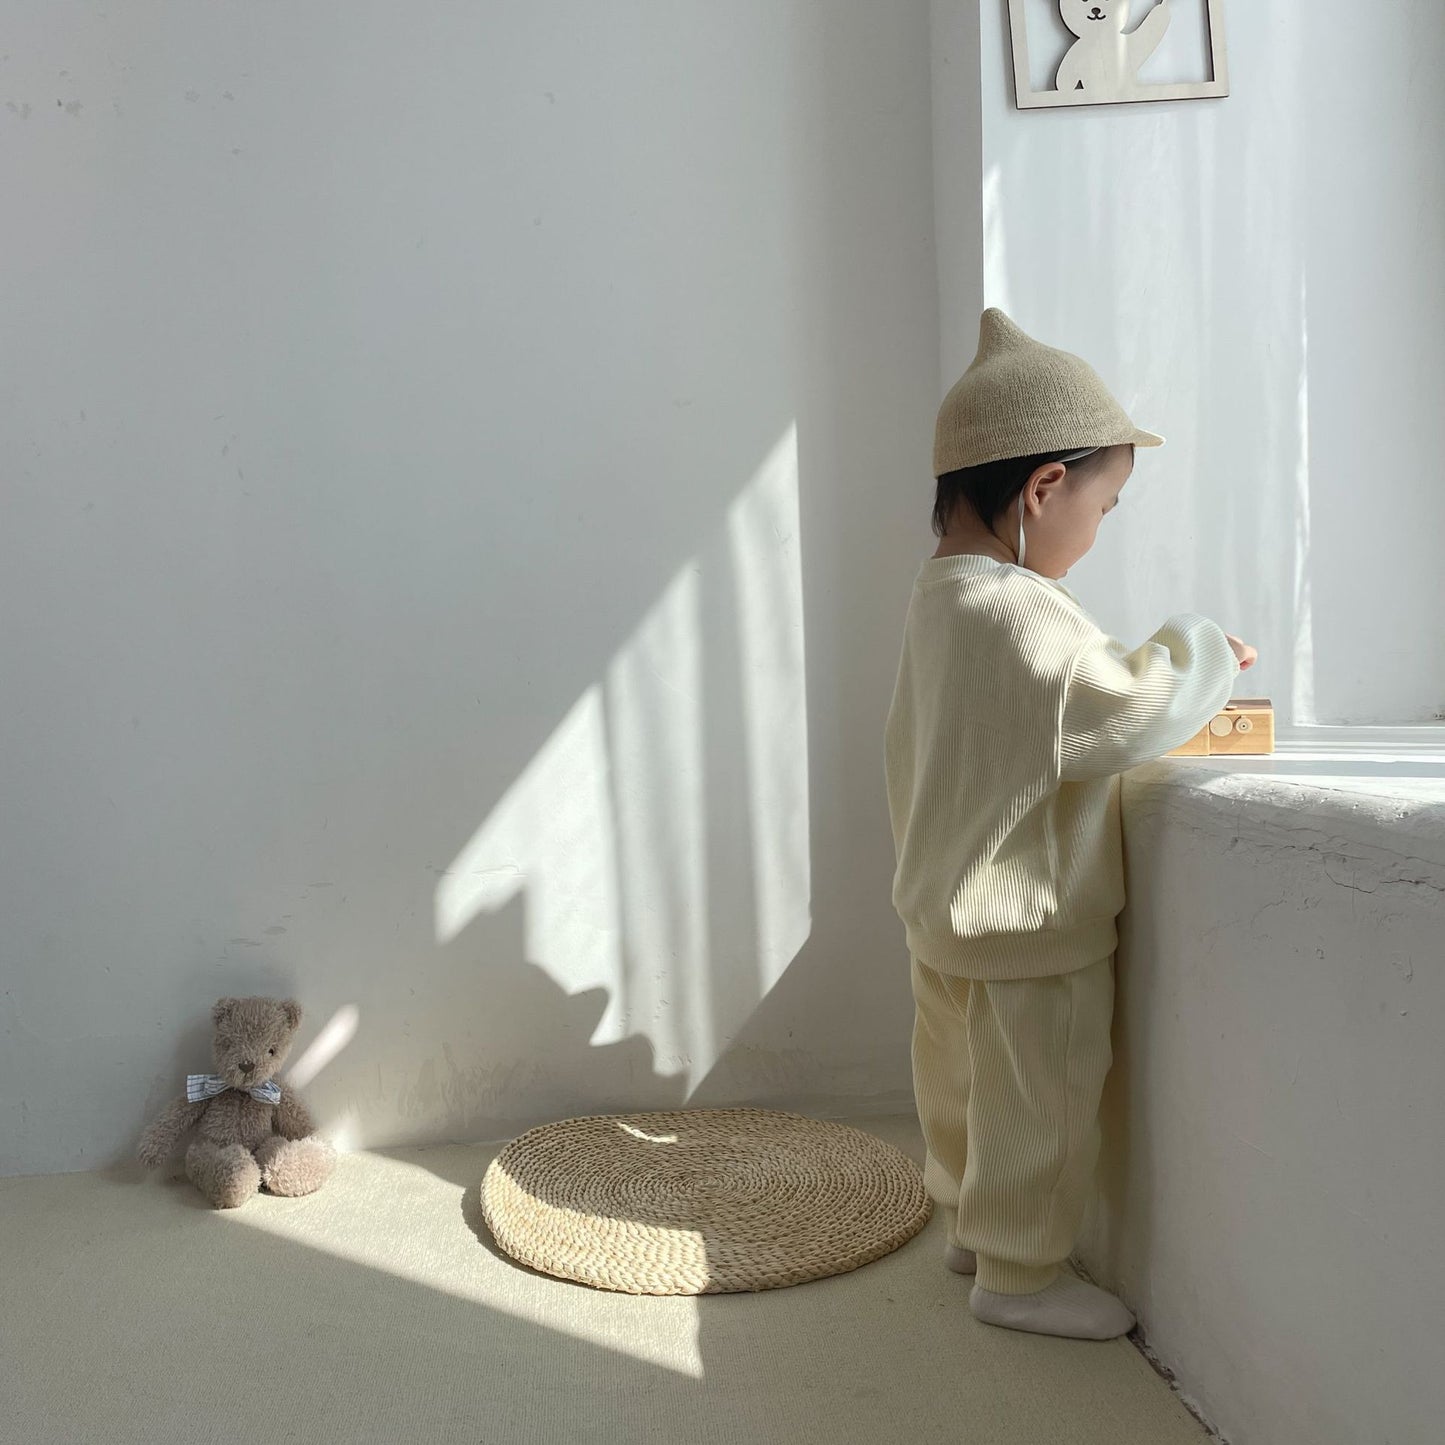 【22929】韓國寶寶衛衣套裝秋季小熊純色套裝男女童春天1-6歲童秋天套裝